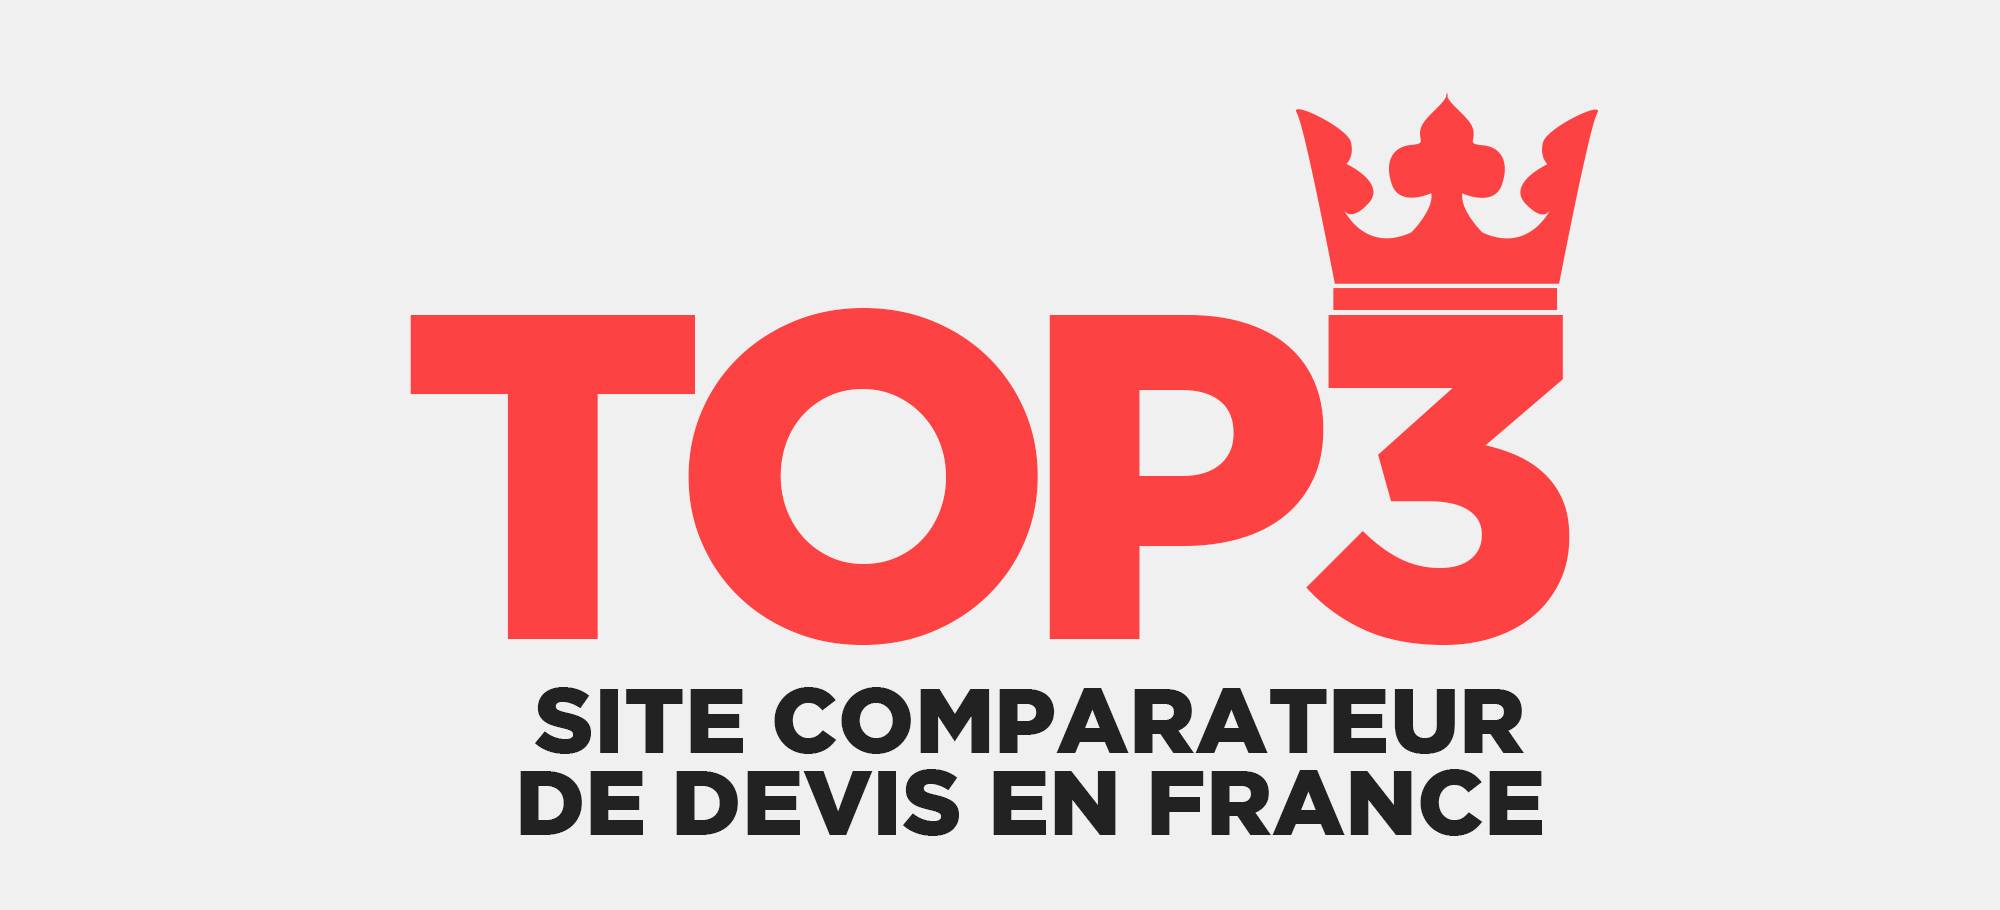 You are currently viewing Top 3 de site comparateur de devis en France